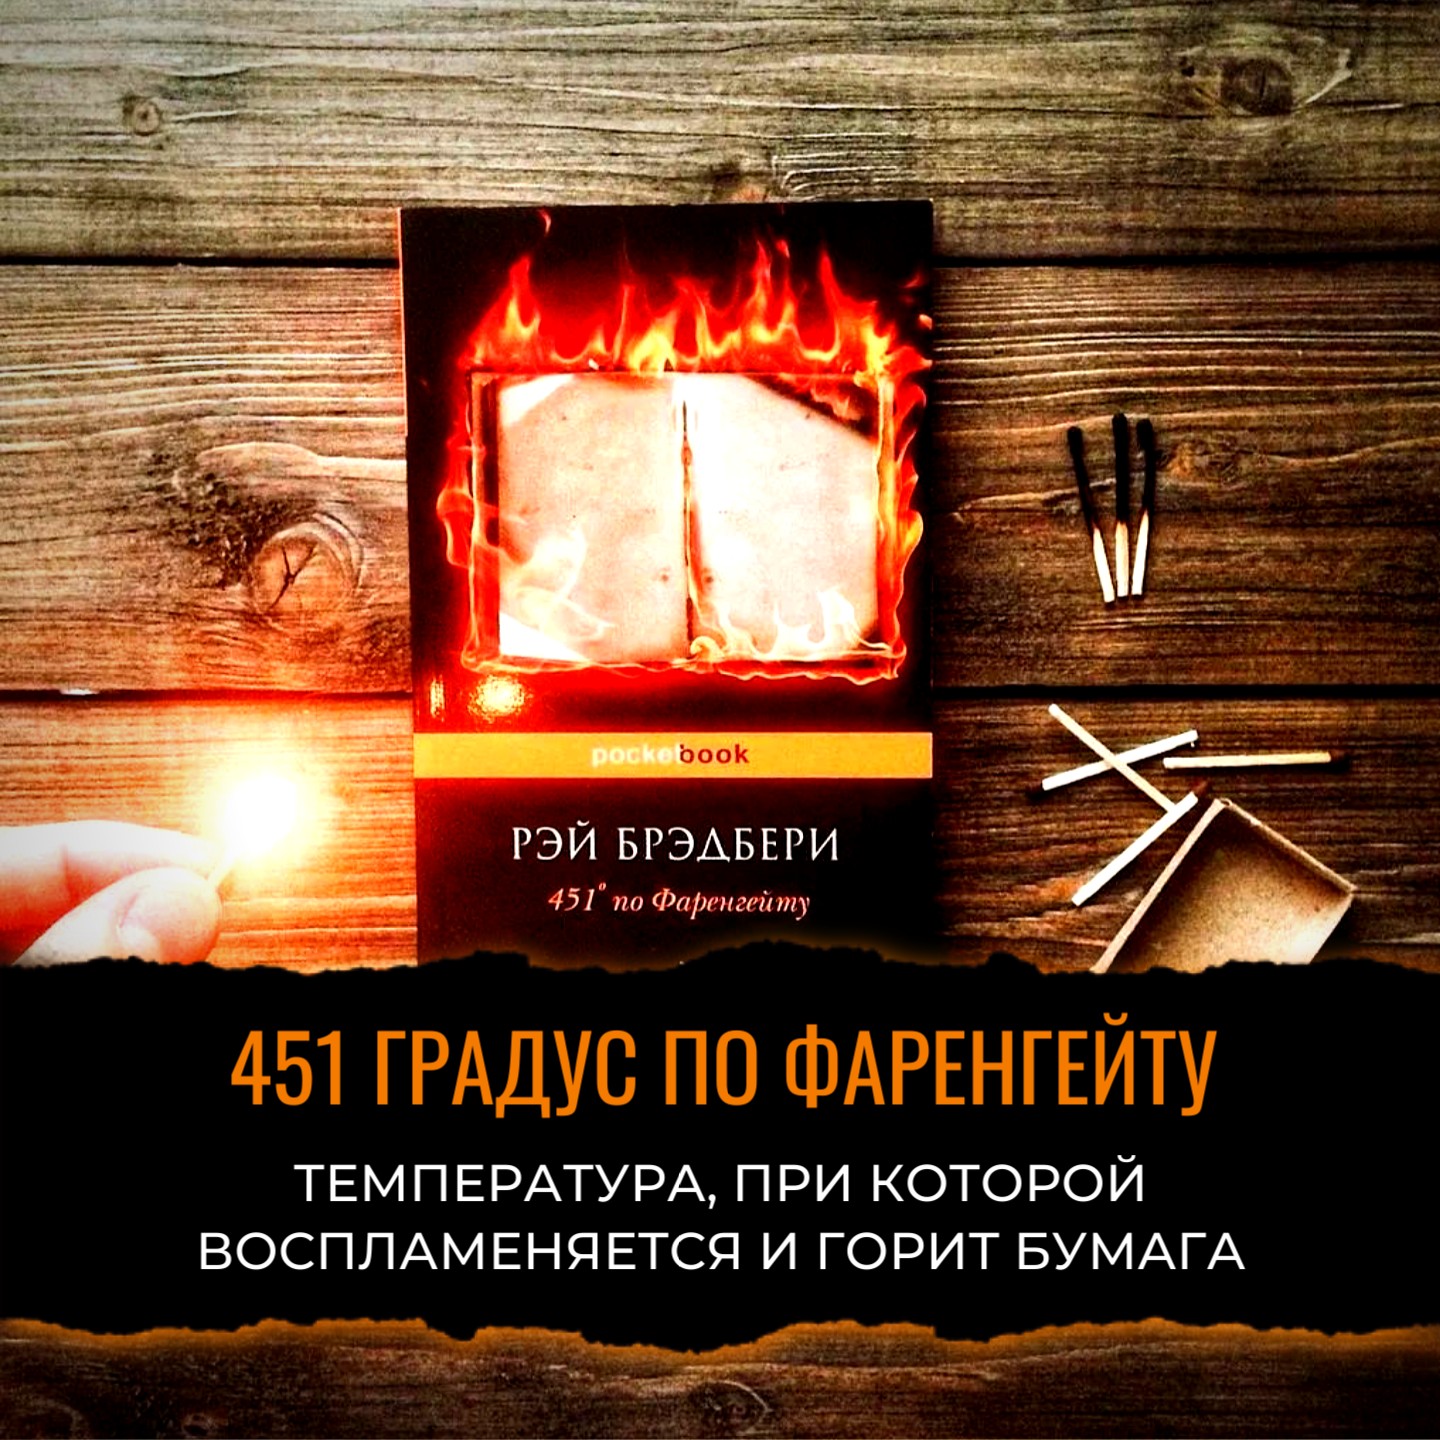 451 градус по Фаренгейту  «451 градус по Фаренгейту» (англ. Fahrenheit 451) — научно-фантастический......